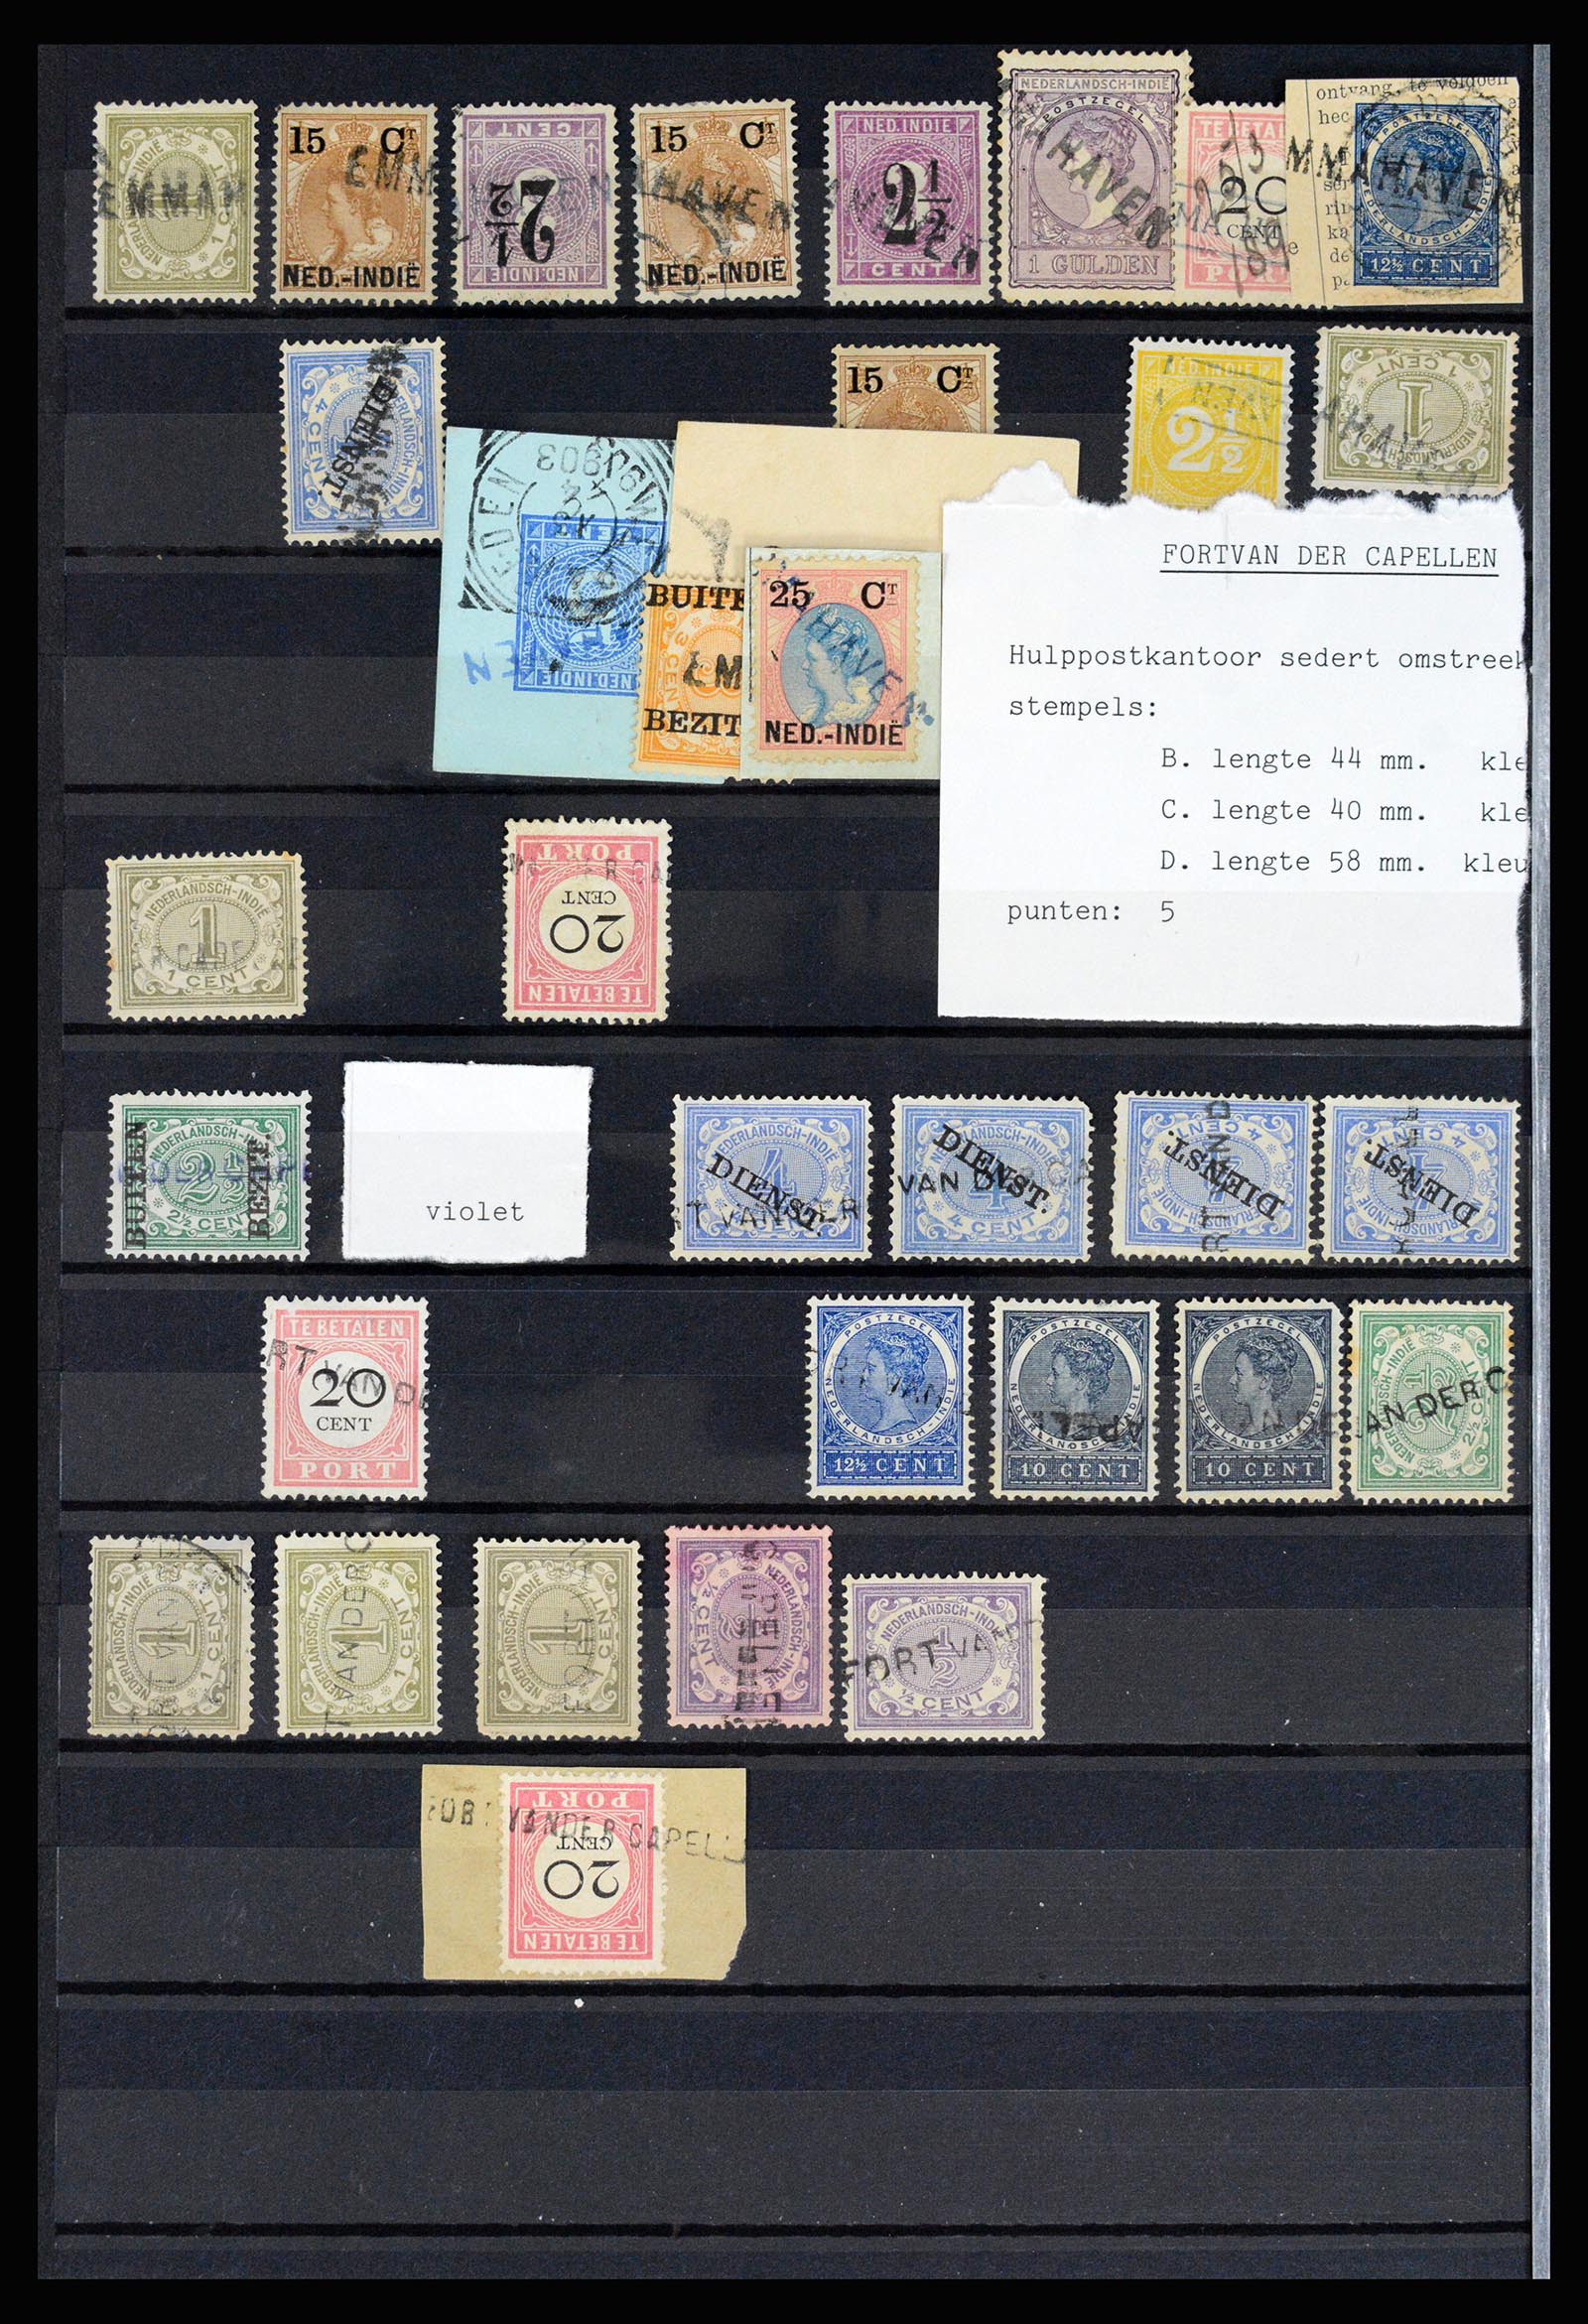 36512 026 - Stamp collection 36512 Nederlands Indië stempels 1872-1930.